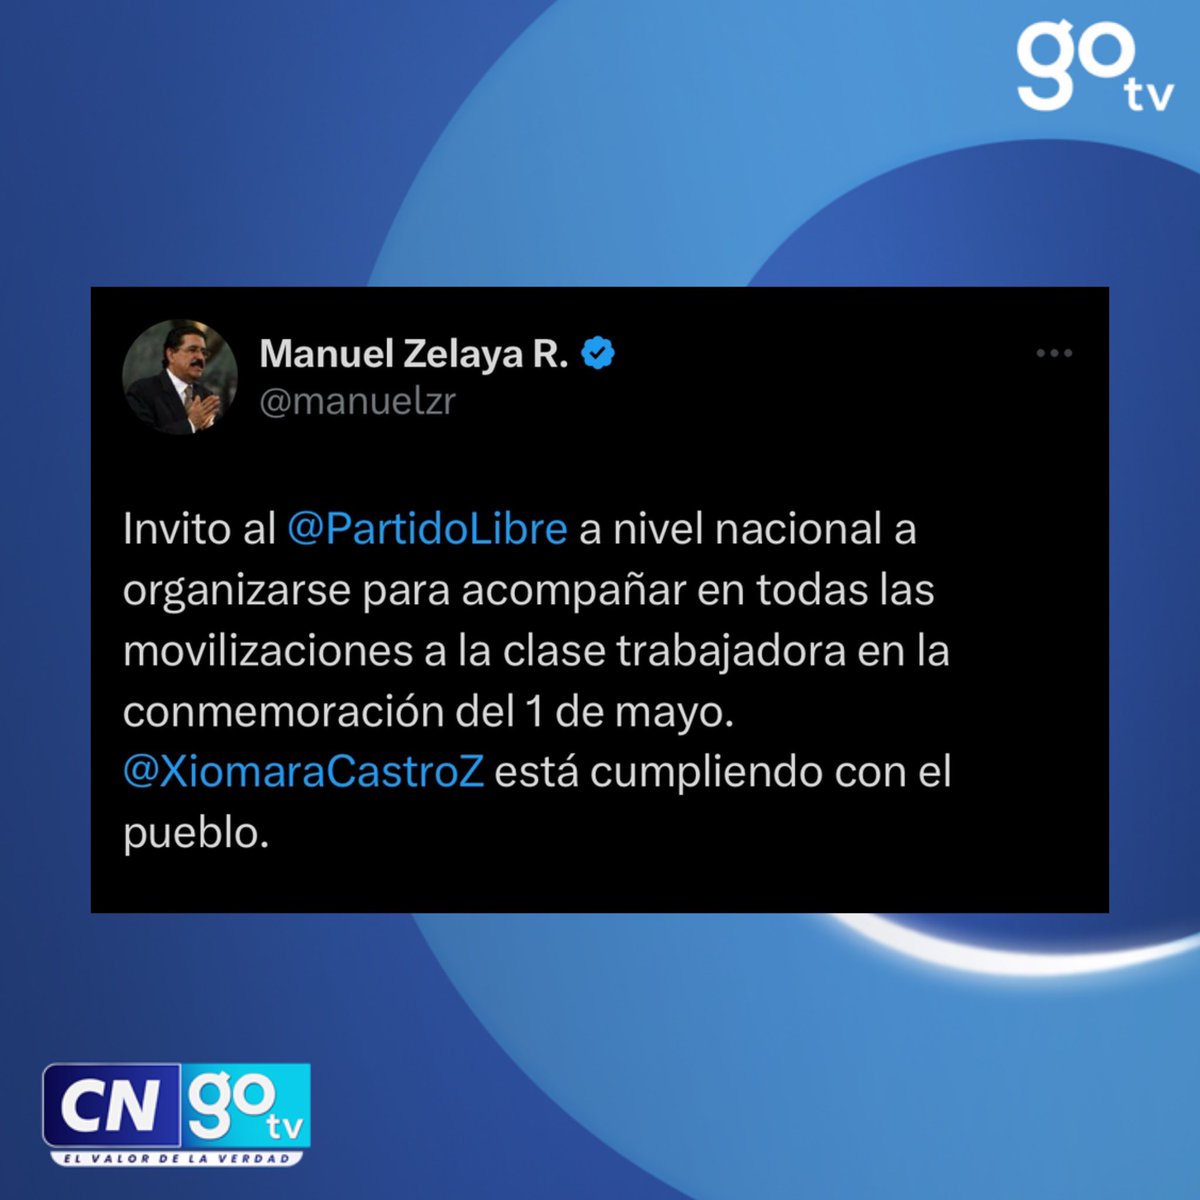 #CNGOTV 🔴El asesor presidencial y coordinador de LIBRE Manuel Zelaya invita a los militantes de Partido Libre a movilizaciones este 1 de mayo. #DiaDelTrabajador #ManuelZelaya #Honduras